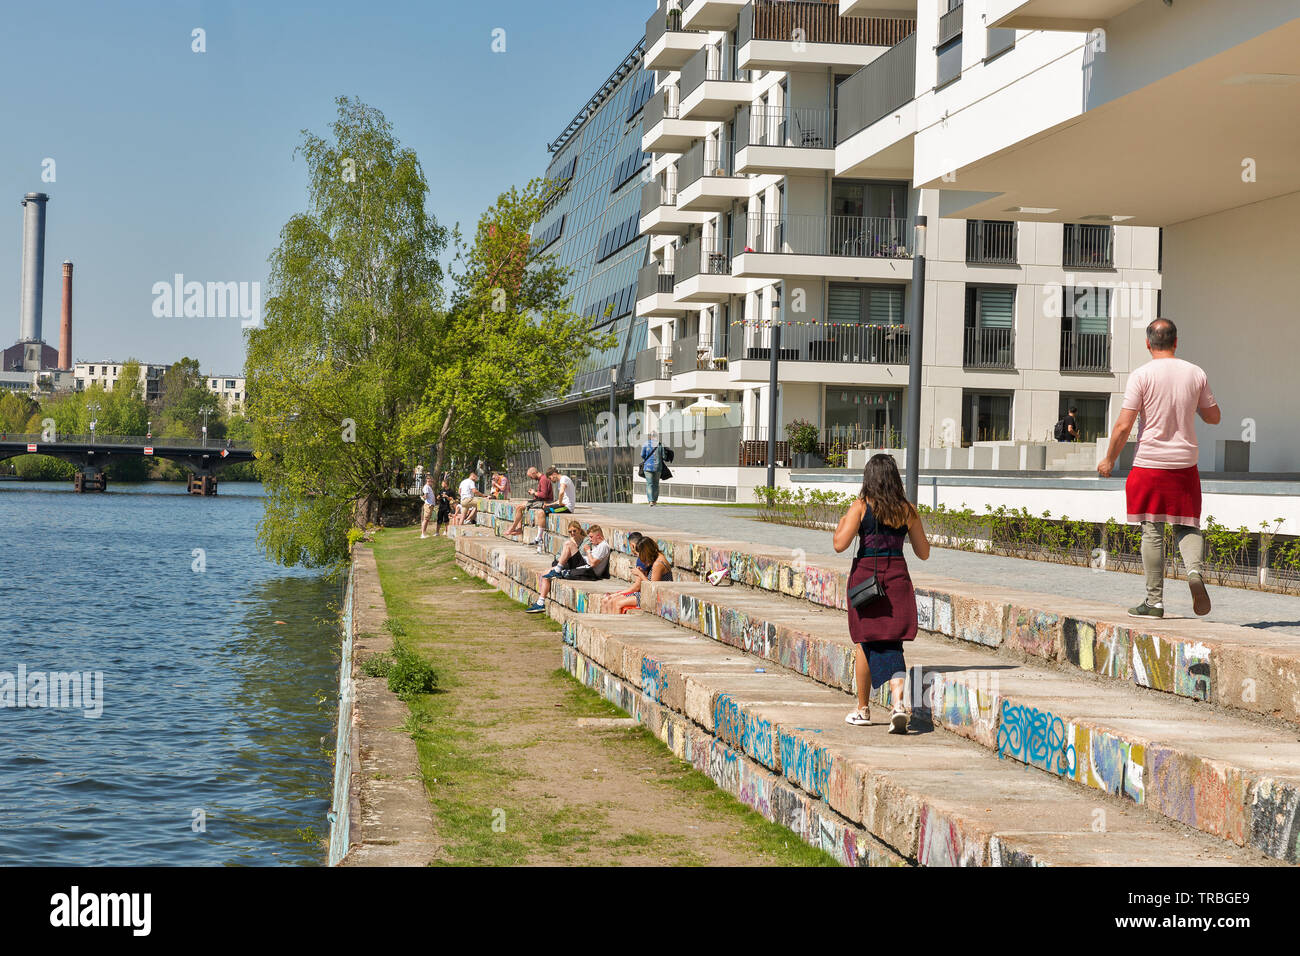 BERLIN, ALLEMAGNE - 18 avril 2019 : Les gens ont le reste le long de la rivière Spree à jour ensoleillé. Berlin est la capitale et la plus grande ville d'Allemagne par les deux sont Banque D'Images